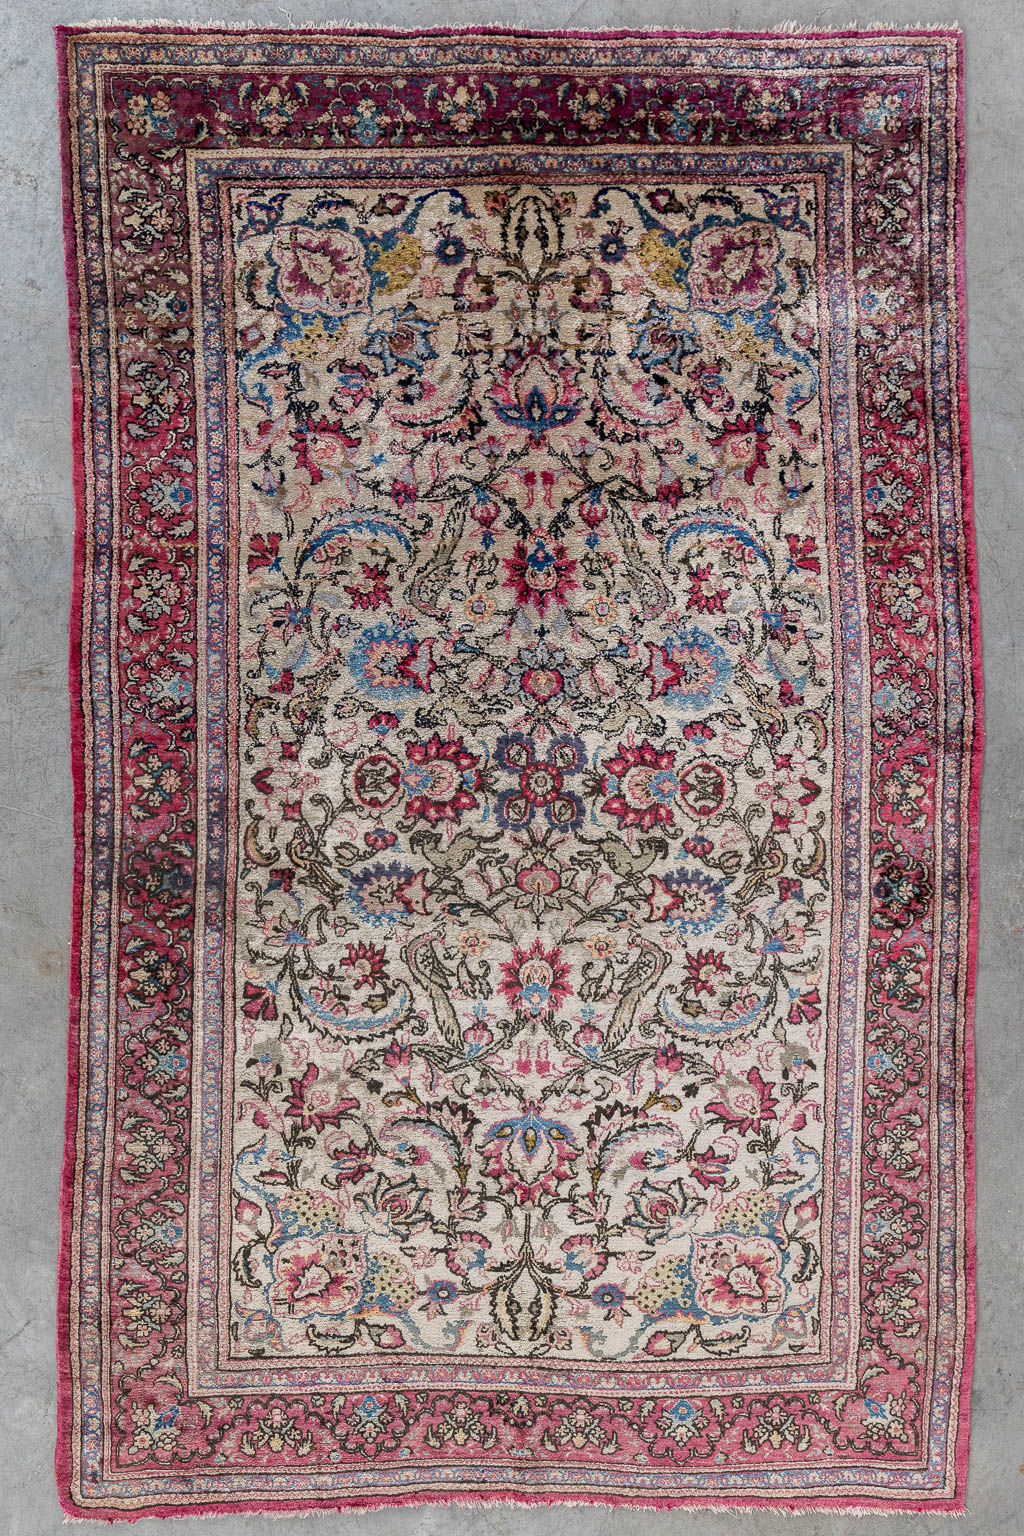  An Oriental hand-made carpet, Kashan, silk.